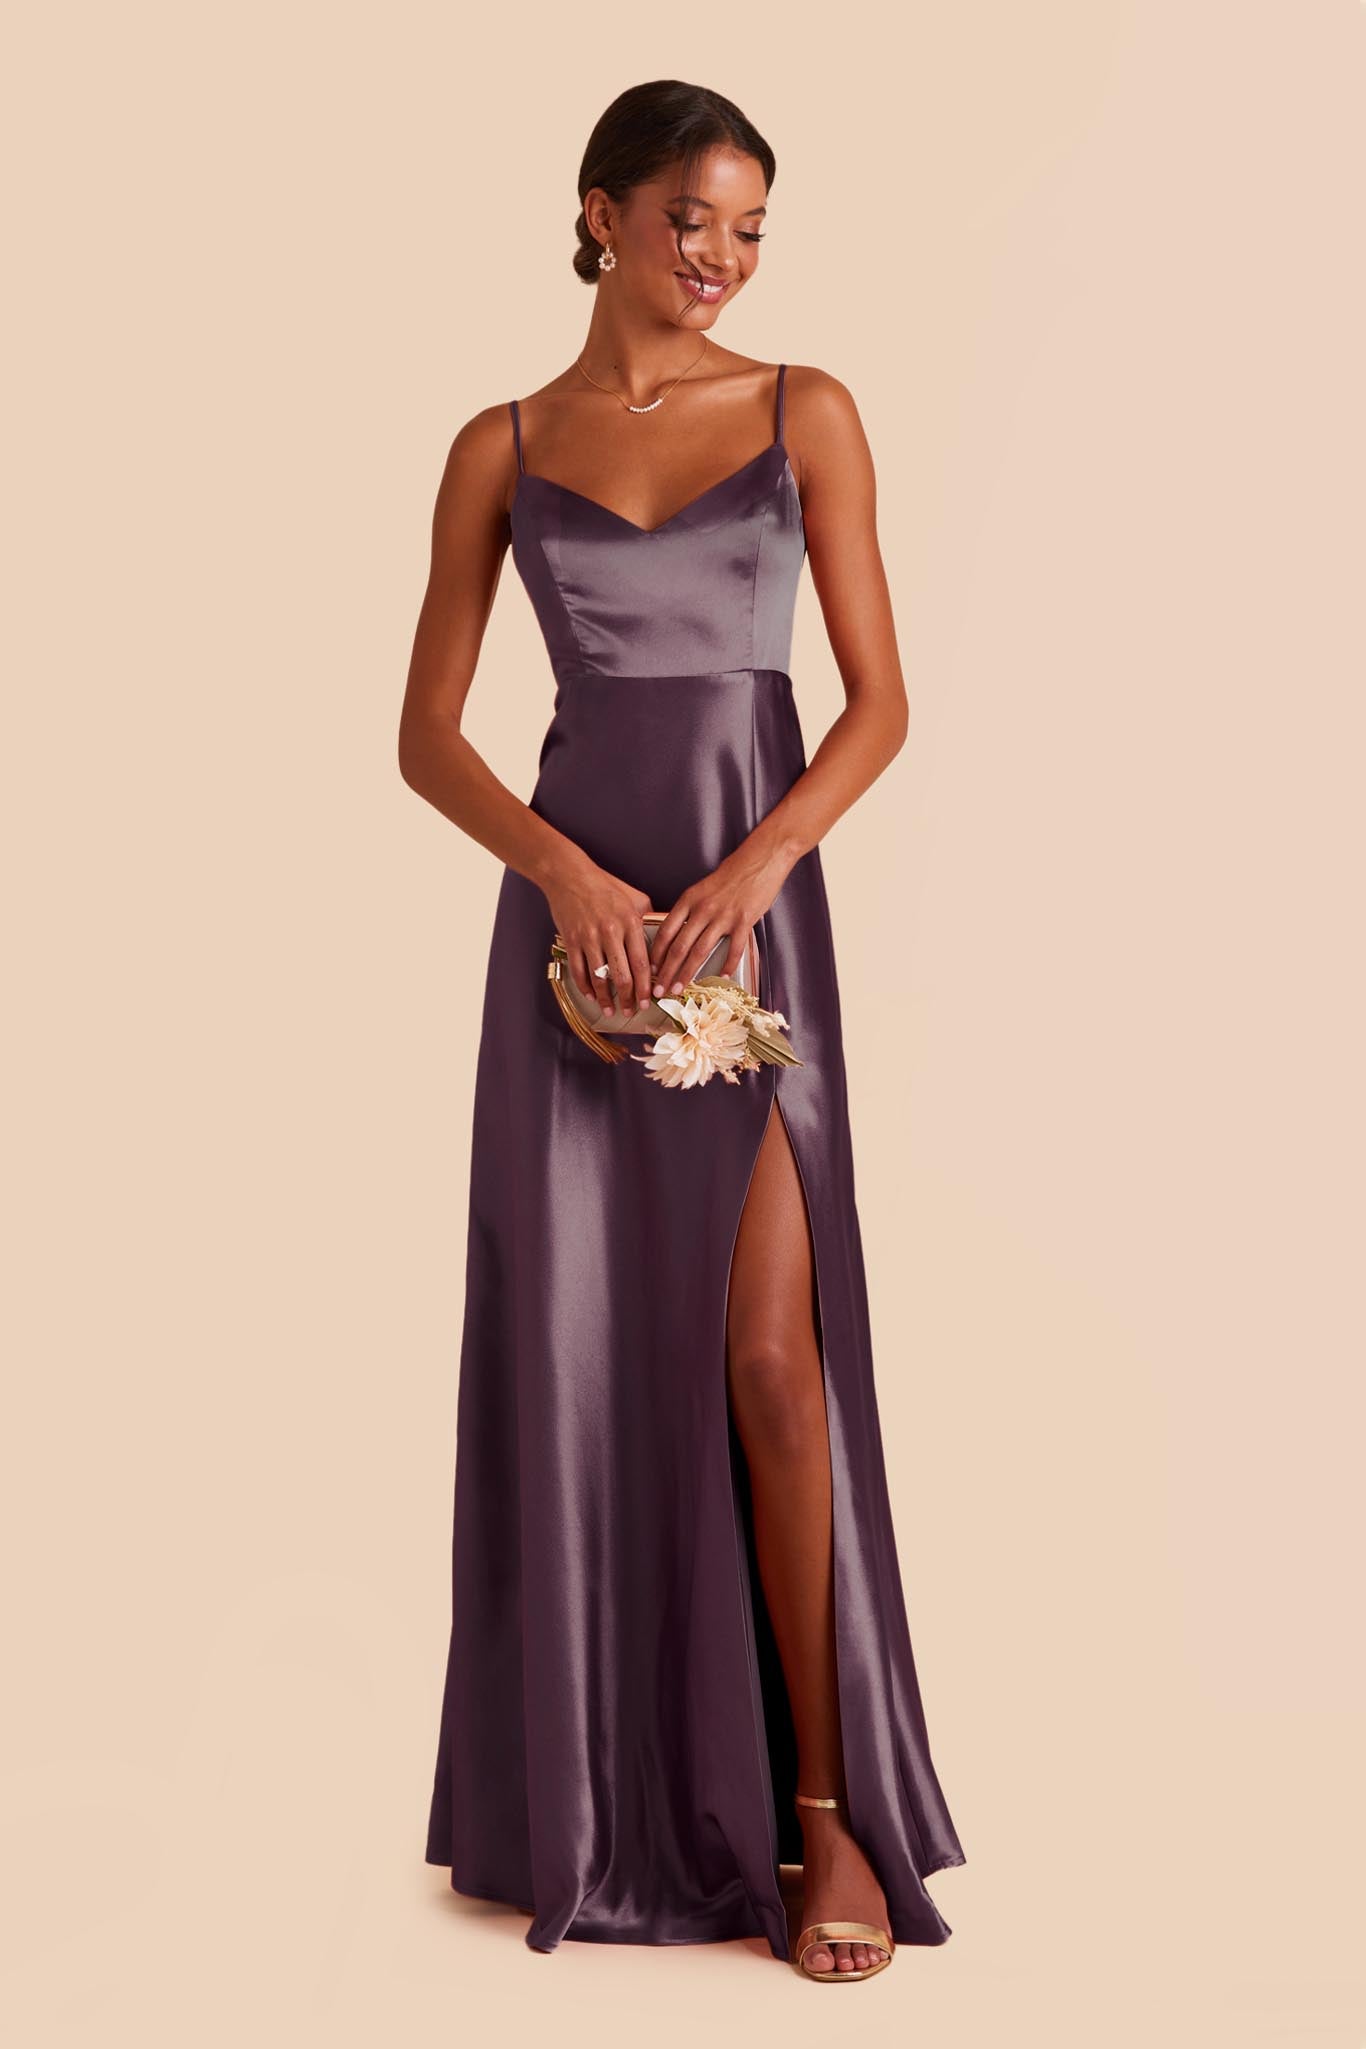 Plum Jay Satin Dress by Birdy Grey